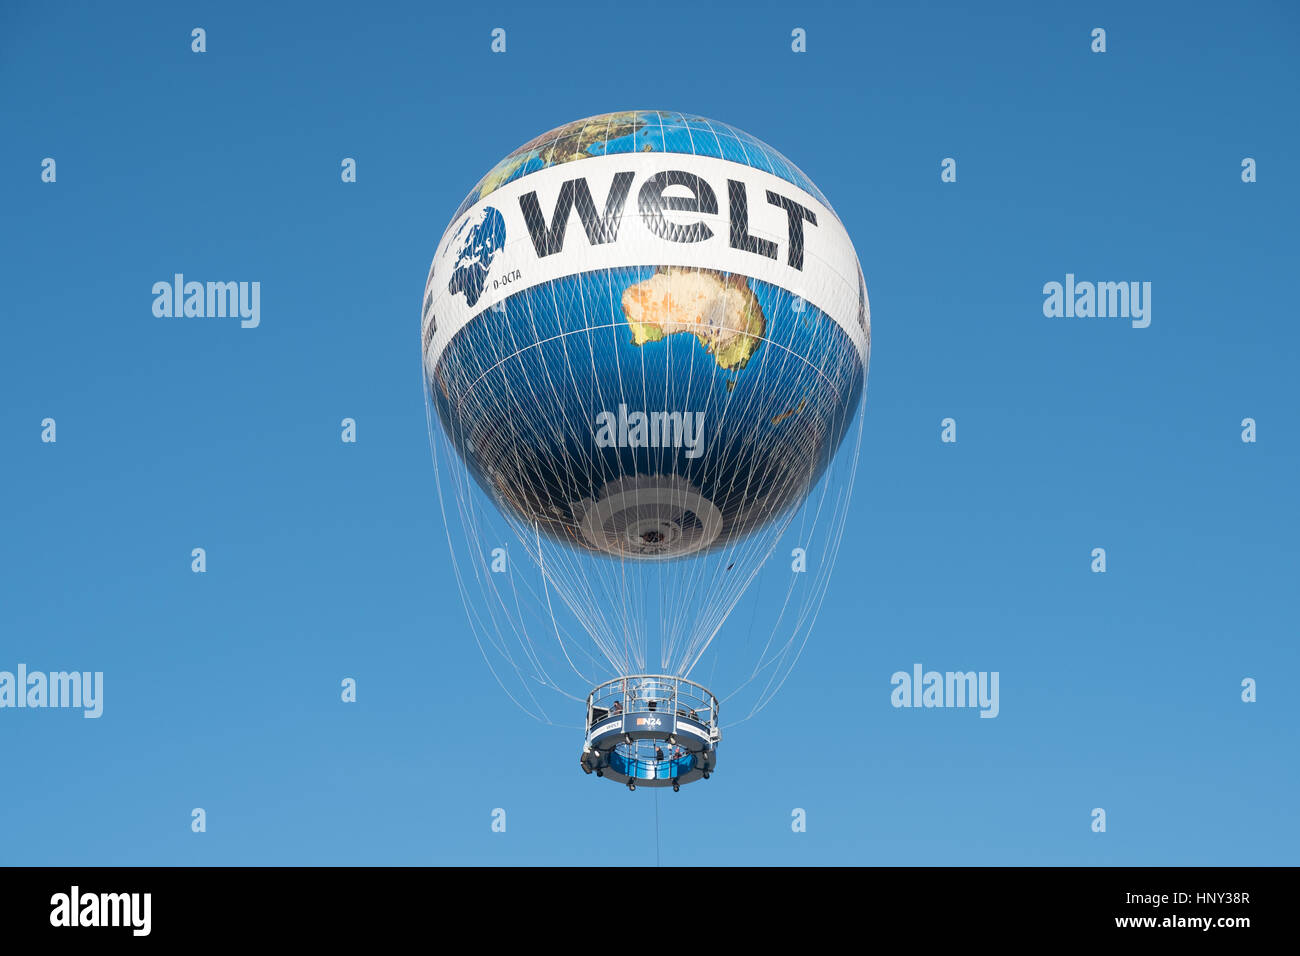 Berlin, Allemagne - 15 février 2017 : Hot air balloon 'Hiflyer" (Highflyer), monde en ballon à Berlin. Banque D'Images